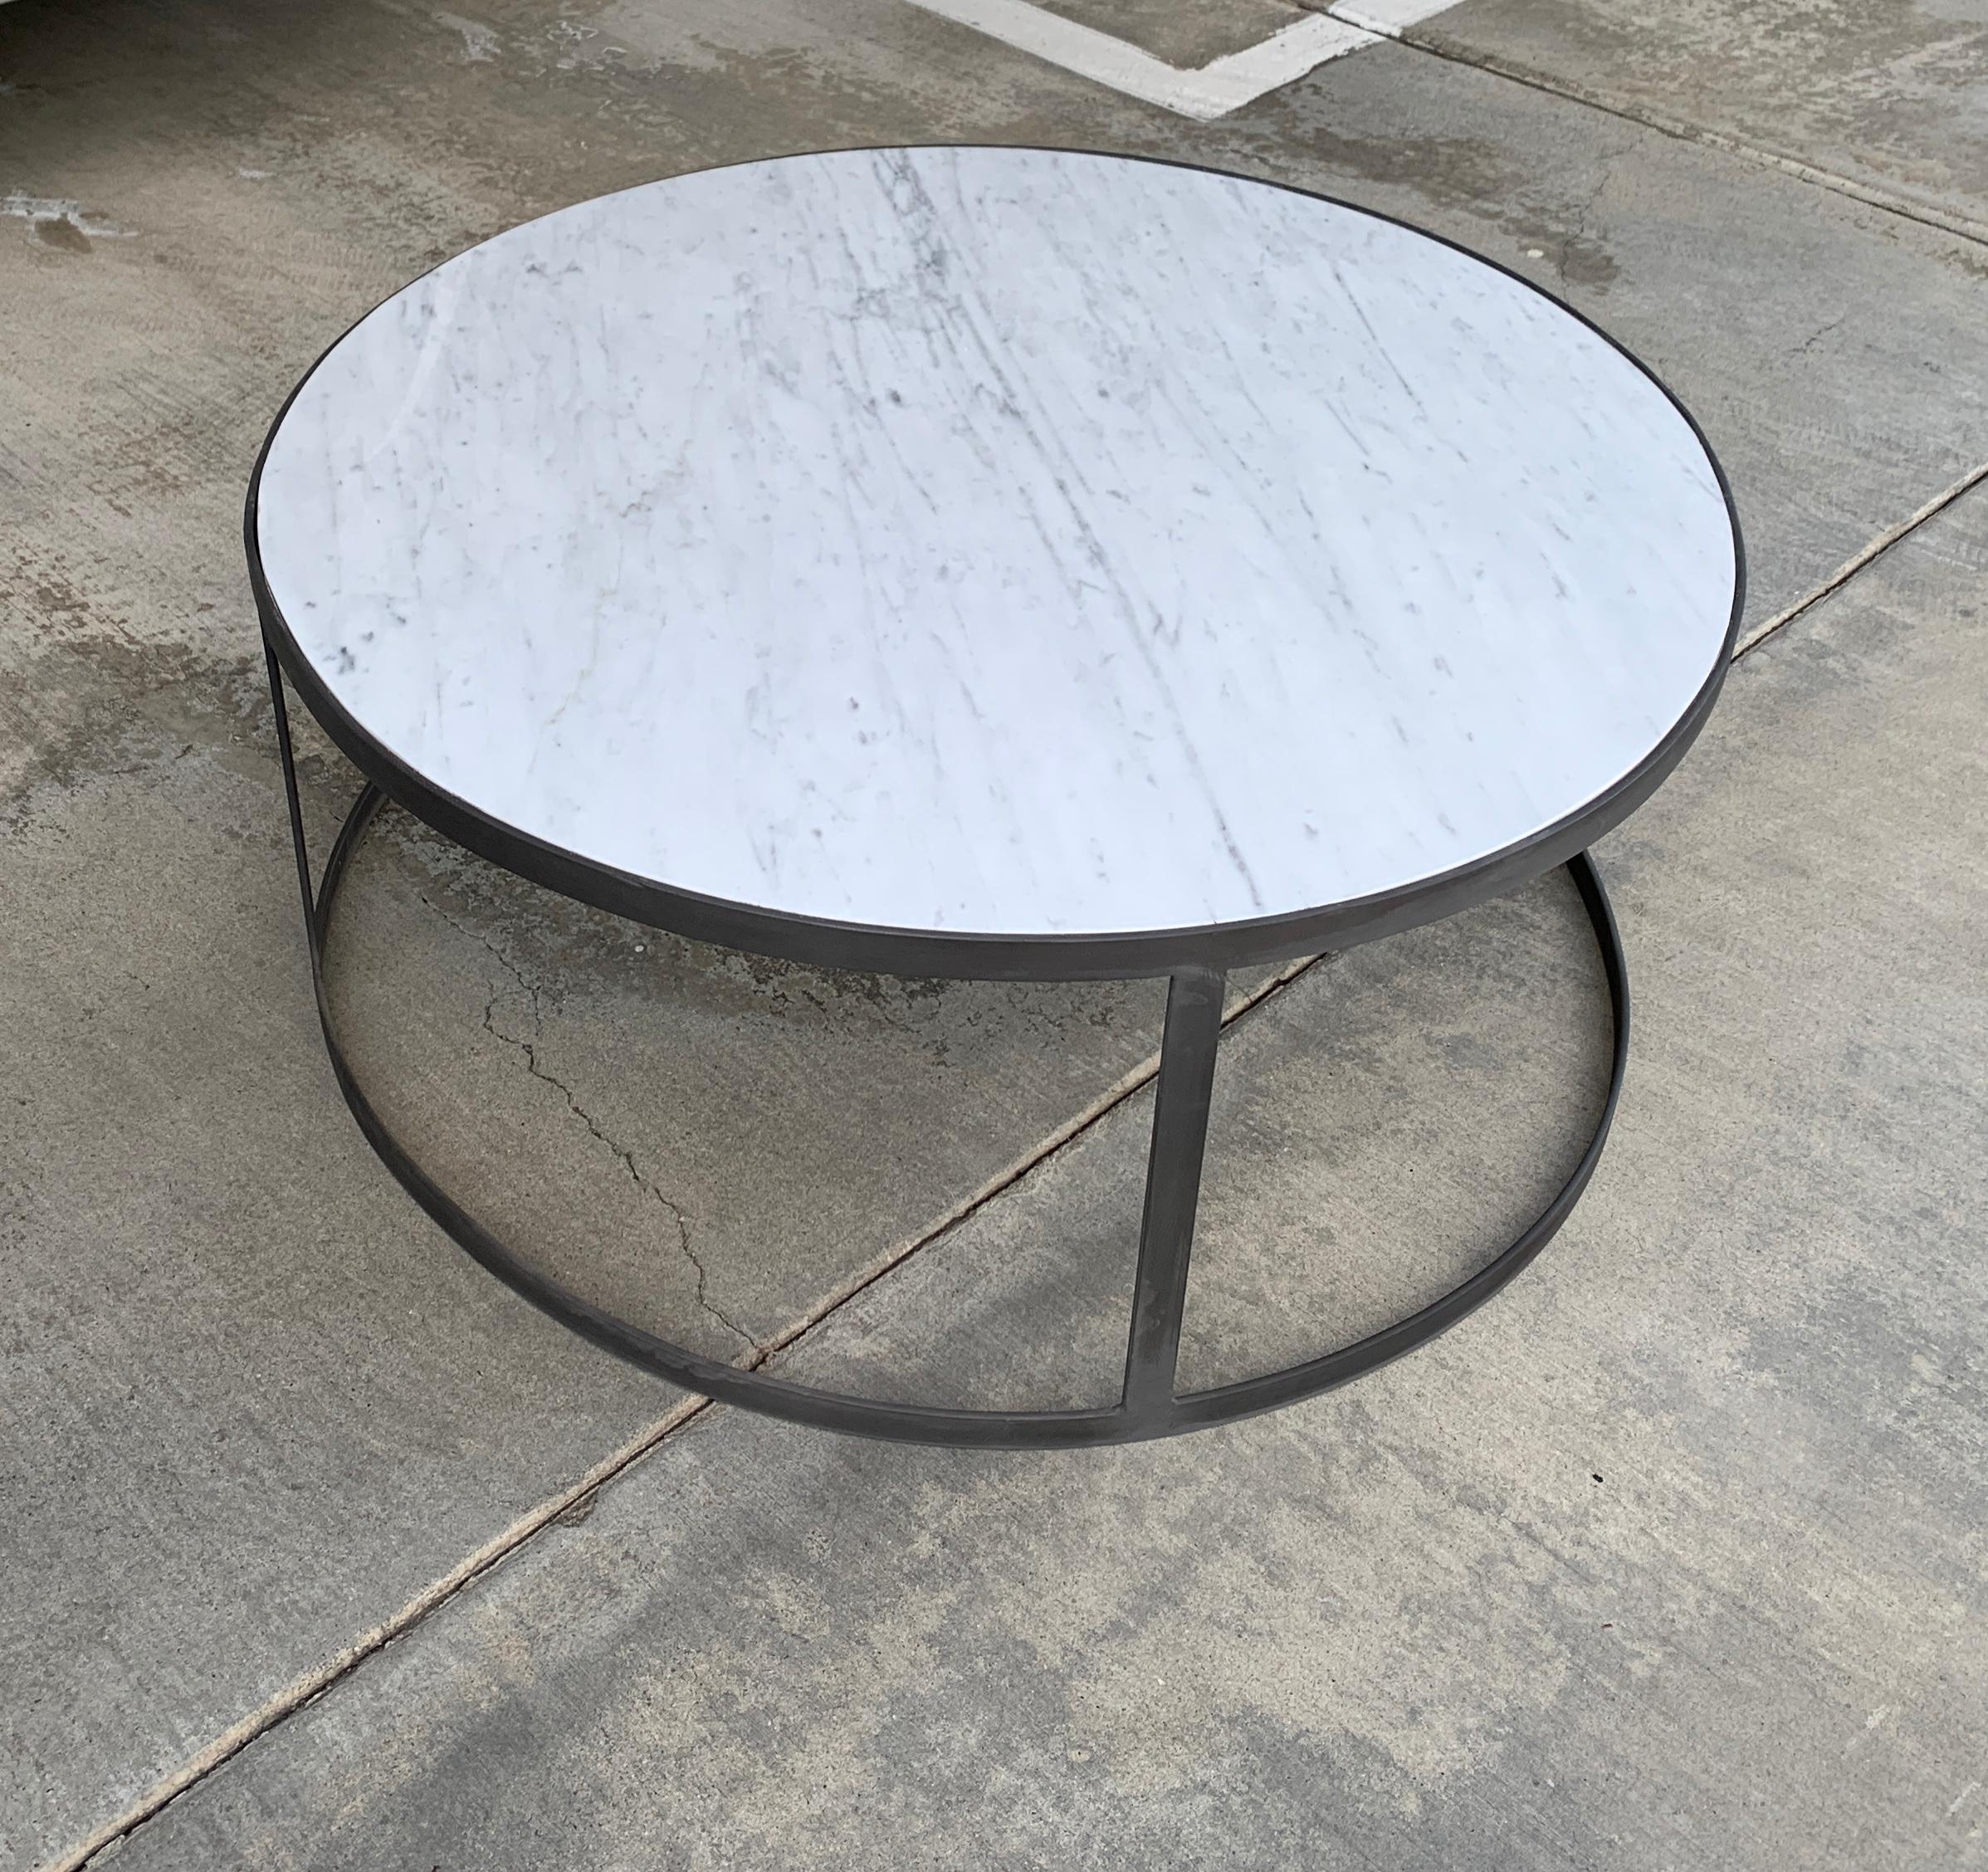 Une table basse en marbre de Carrare avec une base ronde en finition fer. Le dessus est neuf et la base est vintage. Nous avons dû remplacer l'ancien plateau qui s'était cassé. La base a été recouverte d'une finition en fer, veuillez voir les photos